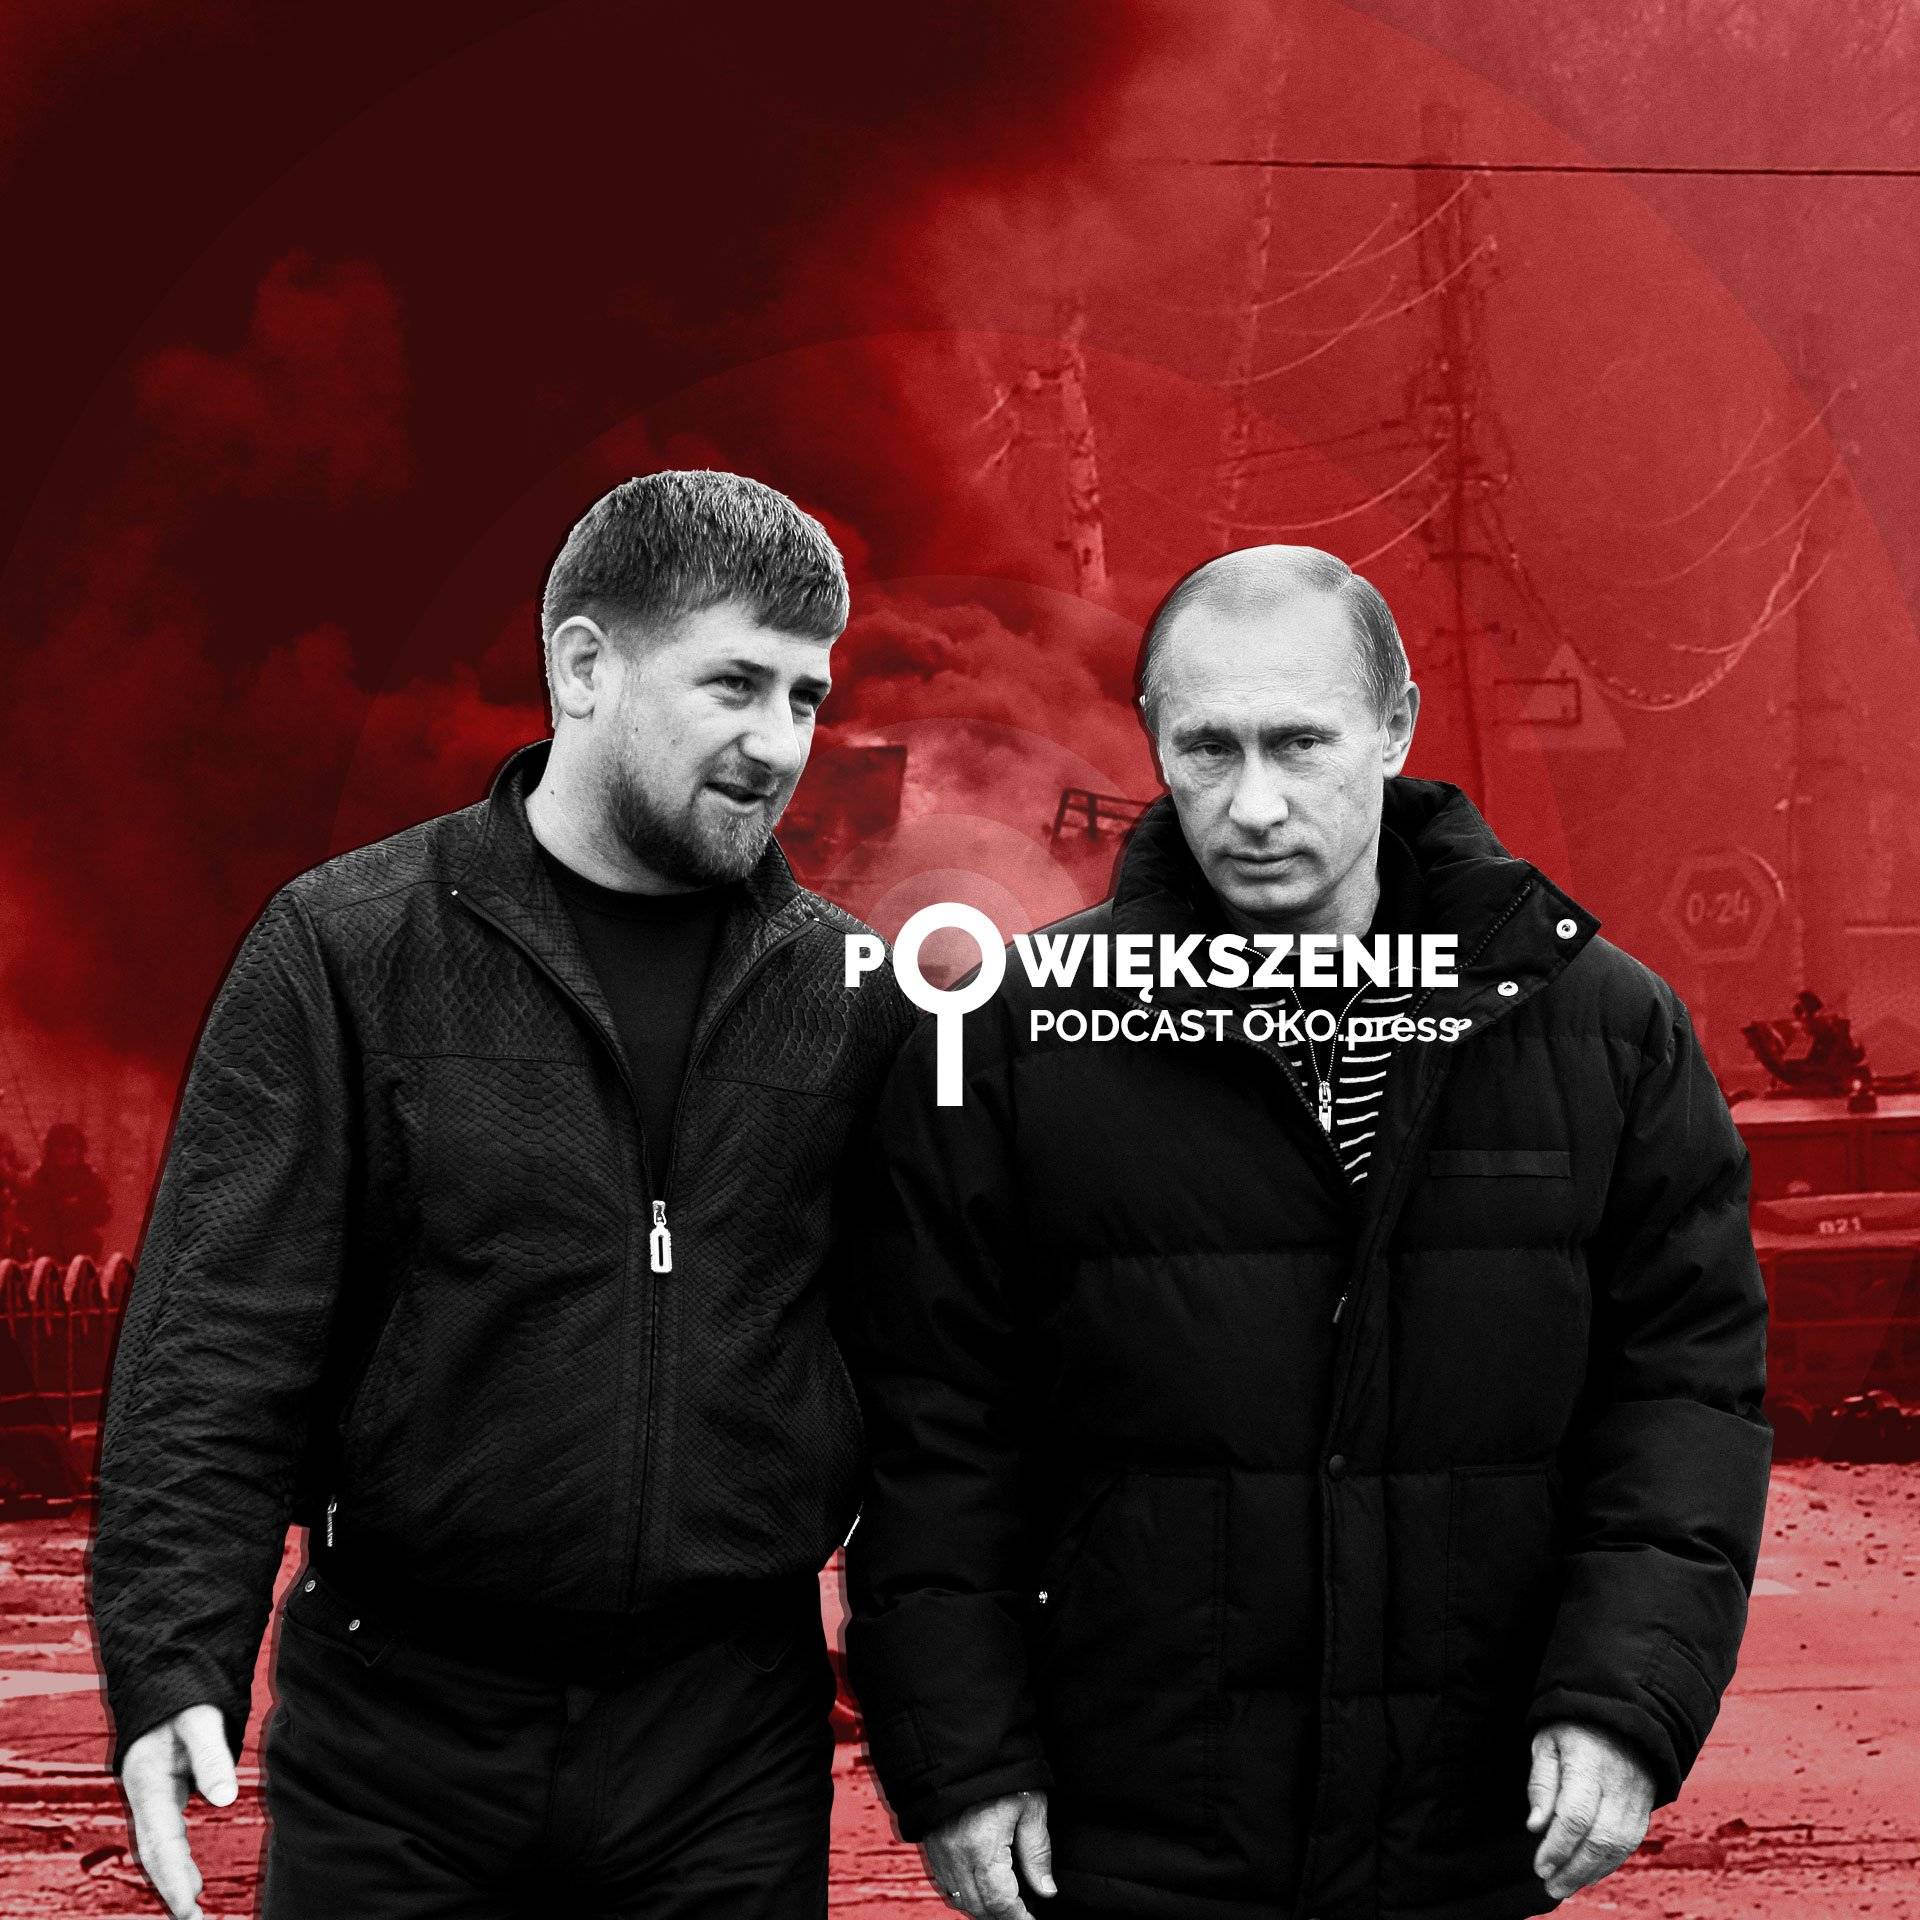 Powiększenie - podcast OKO.press: Karydow, Putin